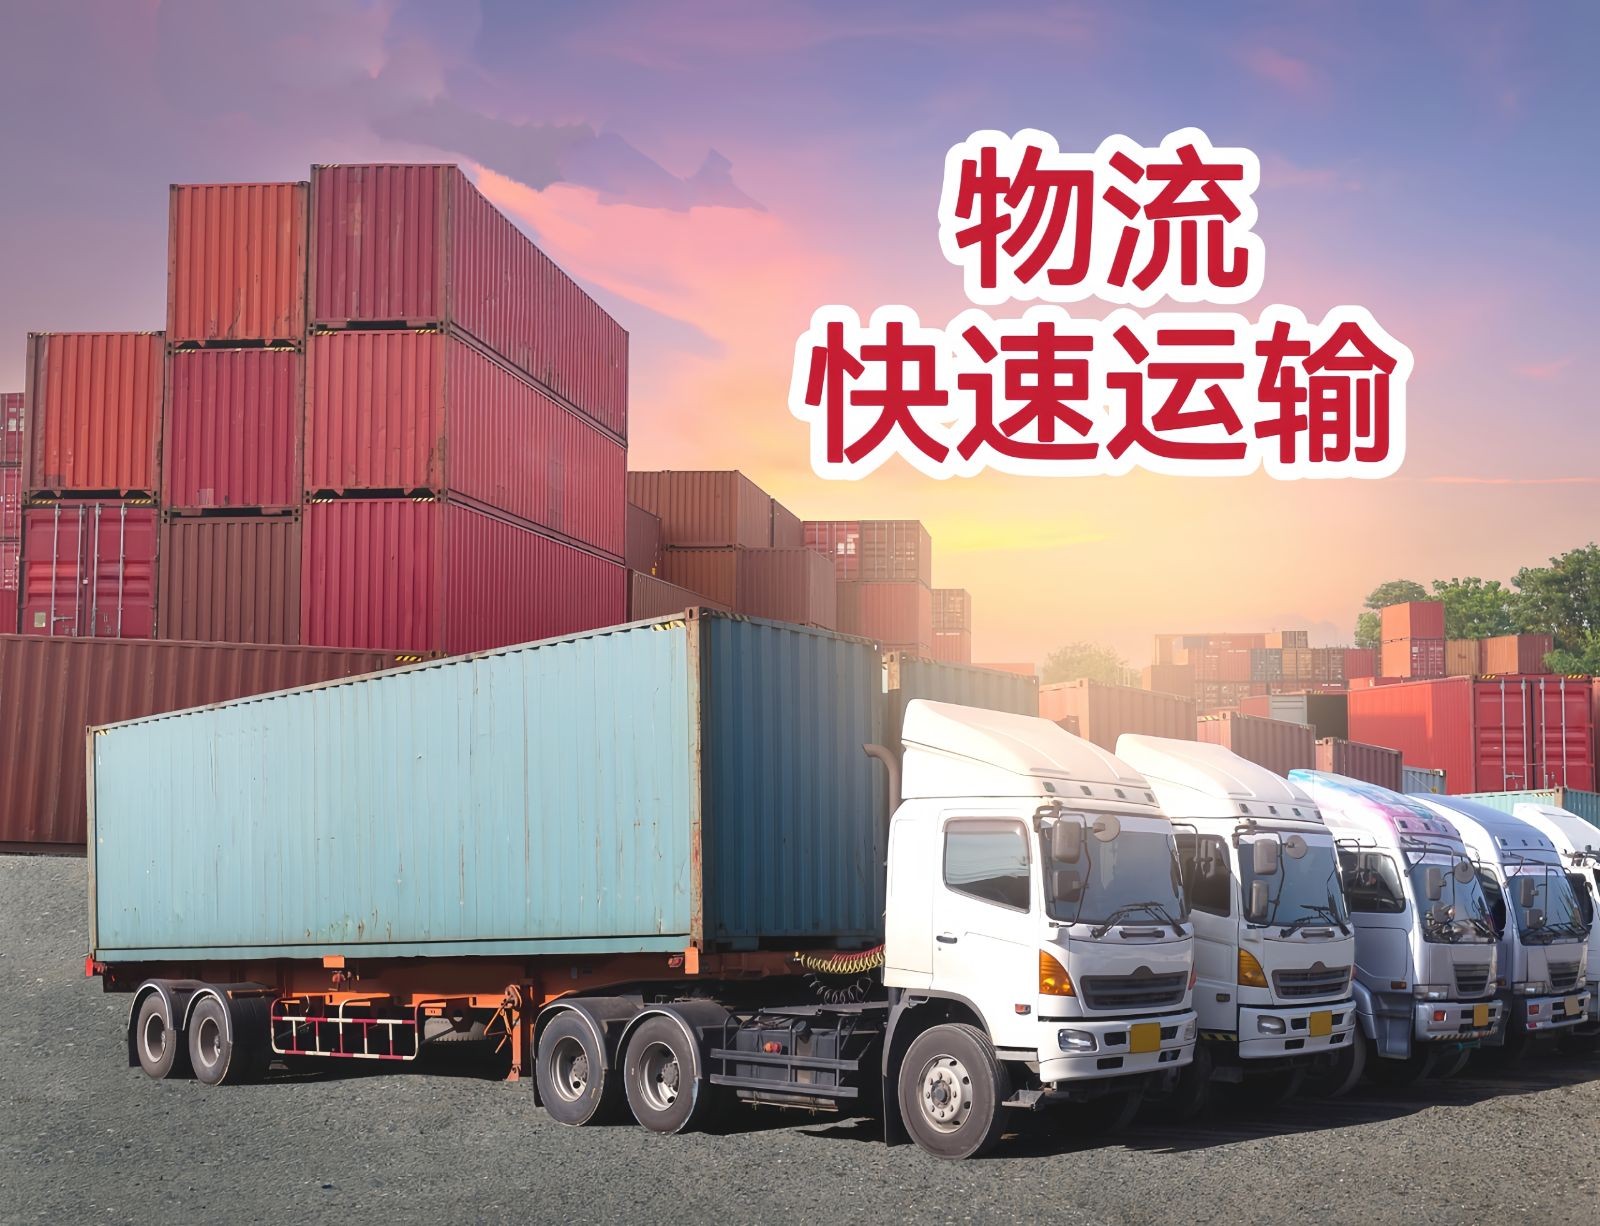 物流运输：永康安稳物流承接永康-湖北、江苏全境货物运输，欢迎广大货主联系我们